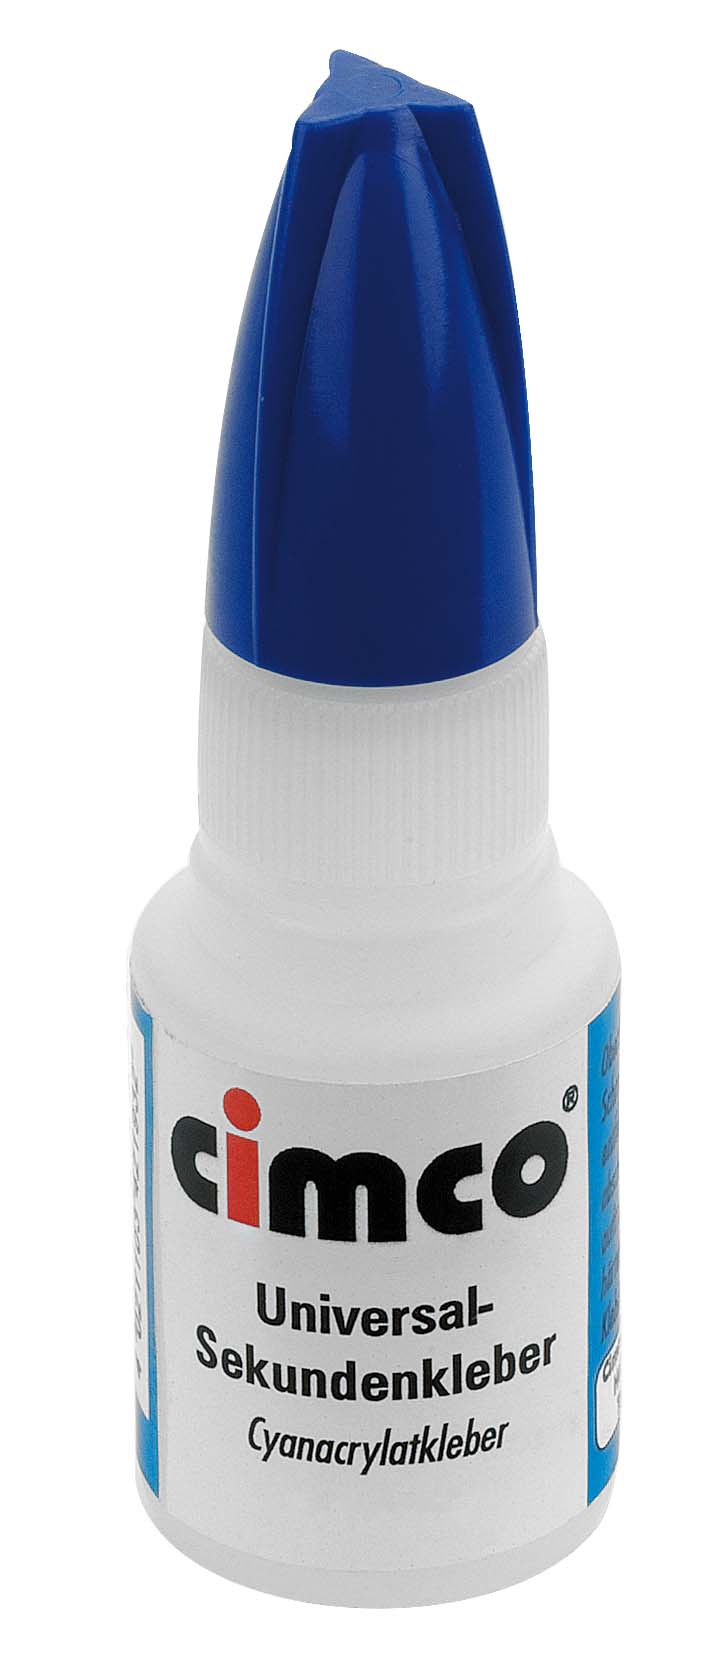 Cimco Werkzeuge Sekundenkleber 20g Cyanacrylat 151200 (20gr)